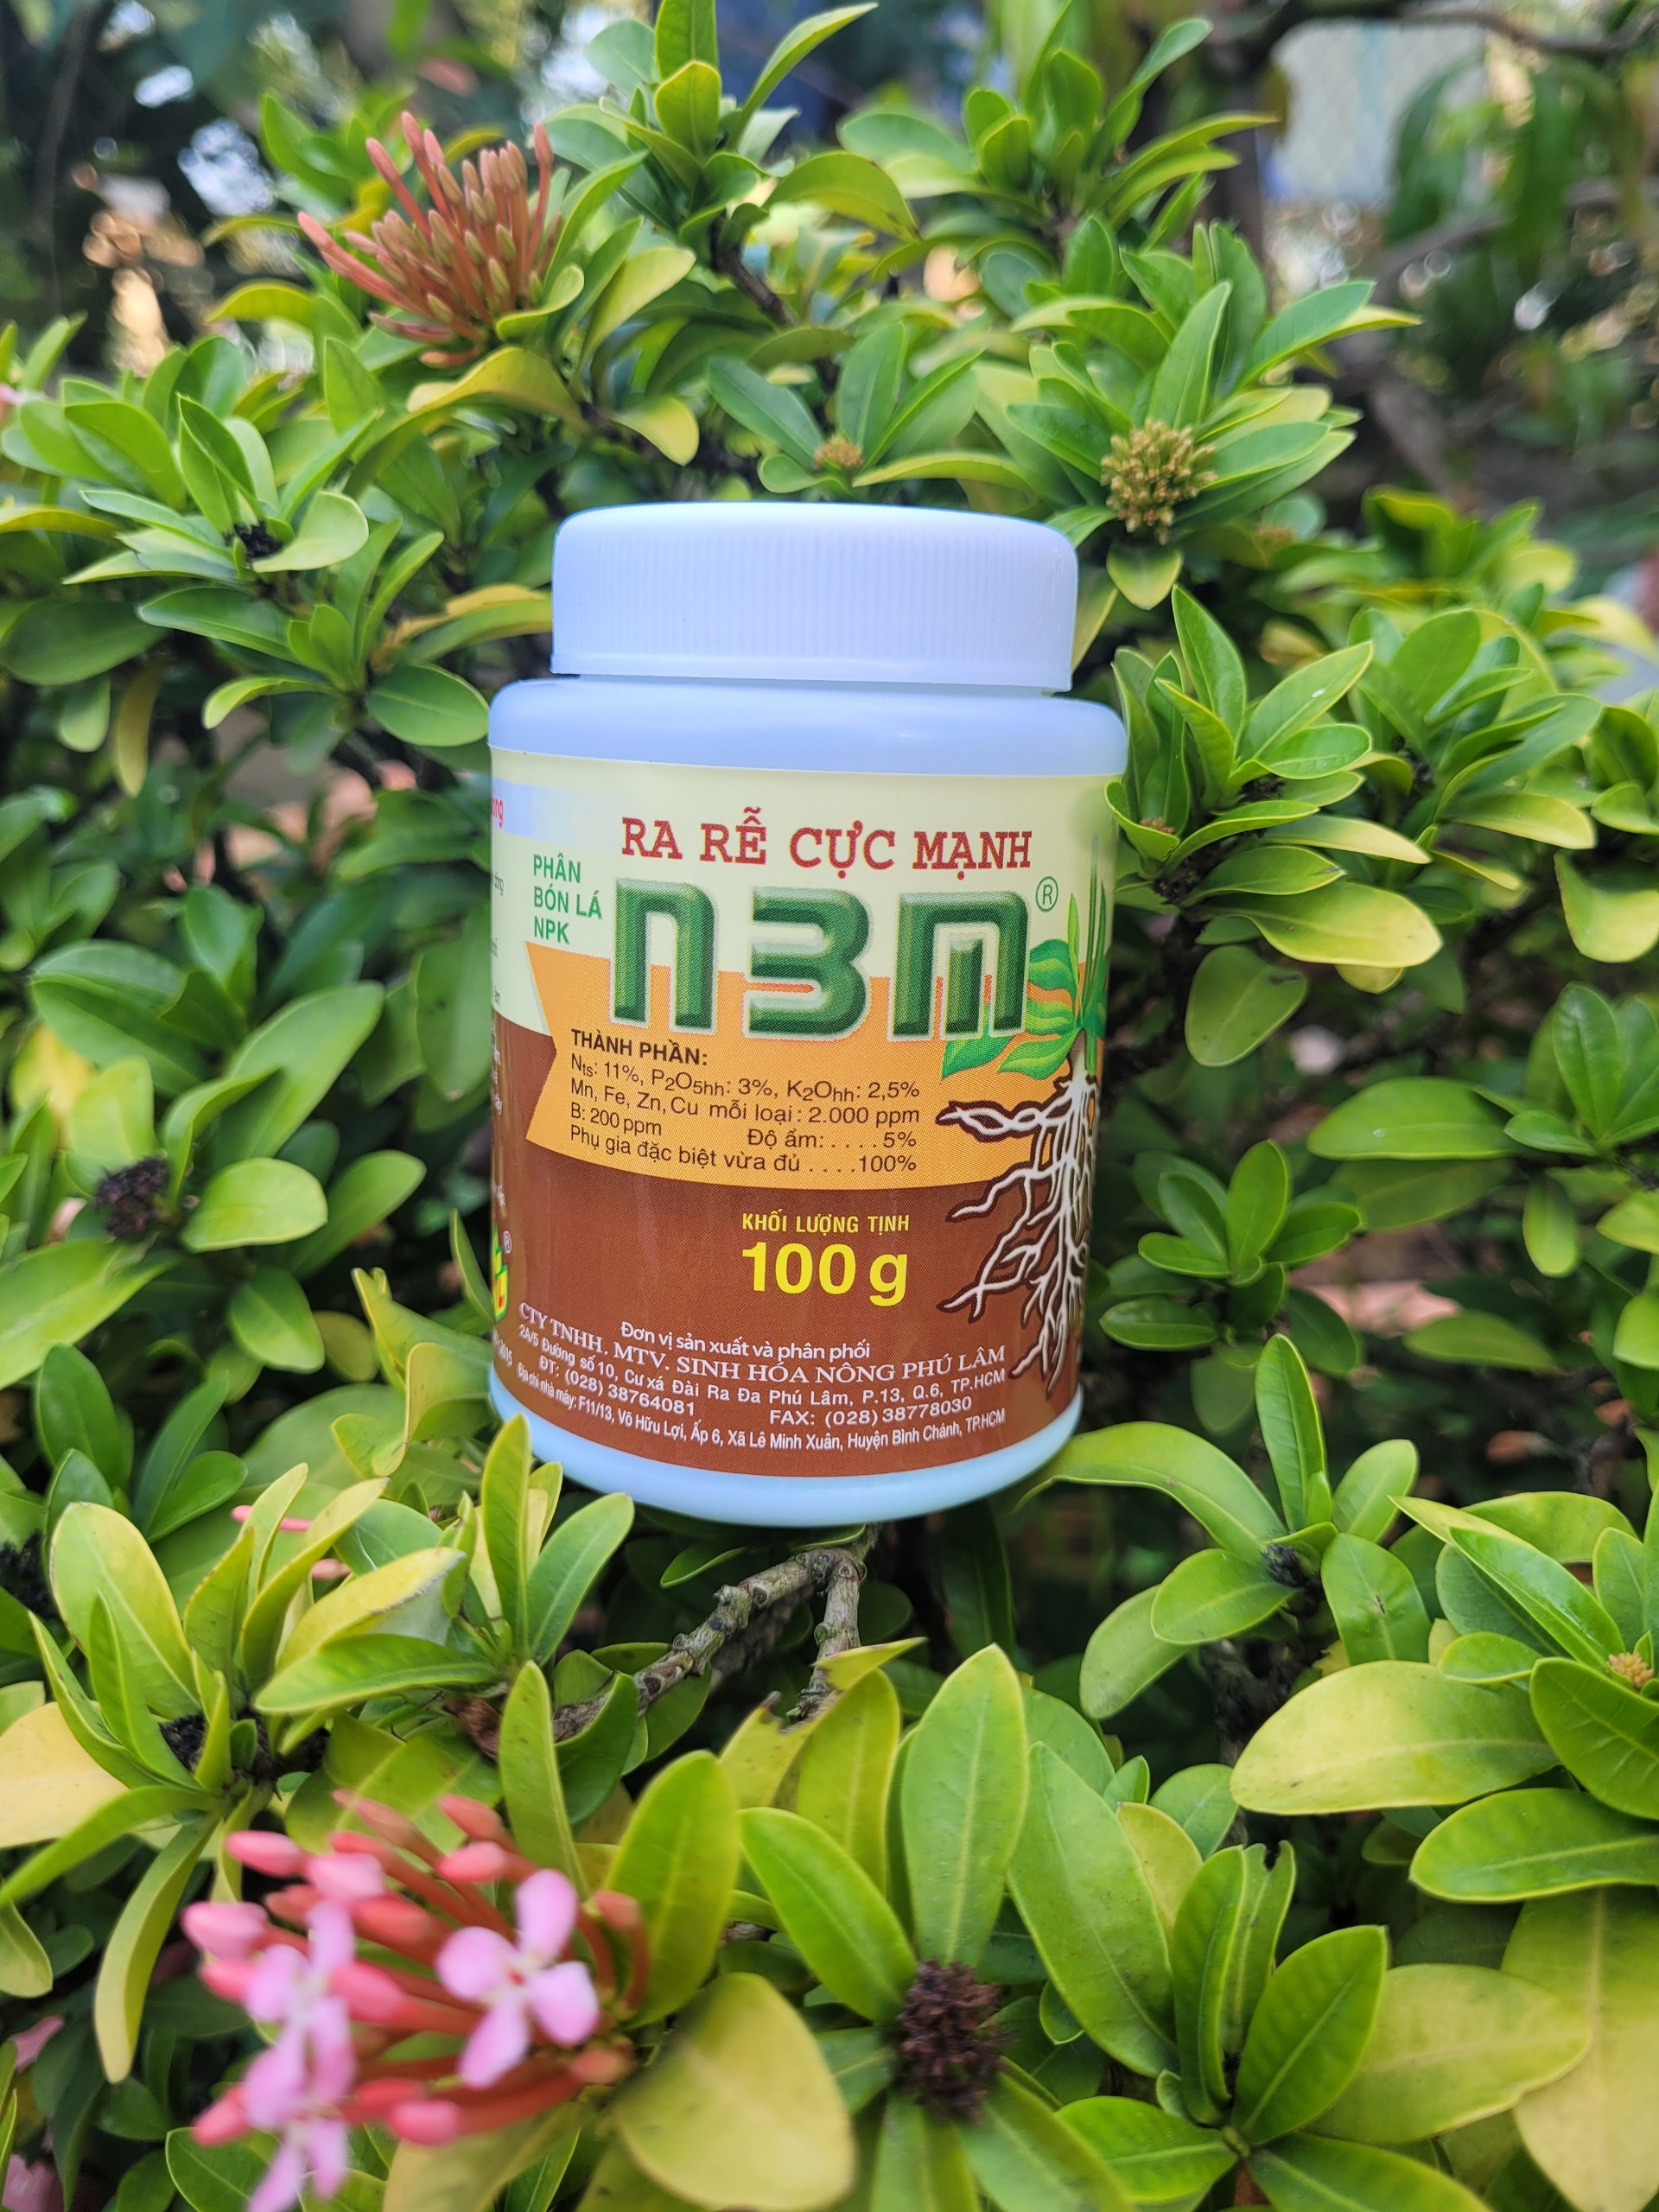 Phân bón kích rễ cực mạnh N3M hủ 100gram sử dụng cho cây kiểng, cây ăn trái, rau màu - hàng công ty Phú Lâm